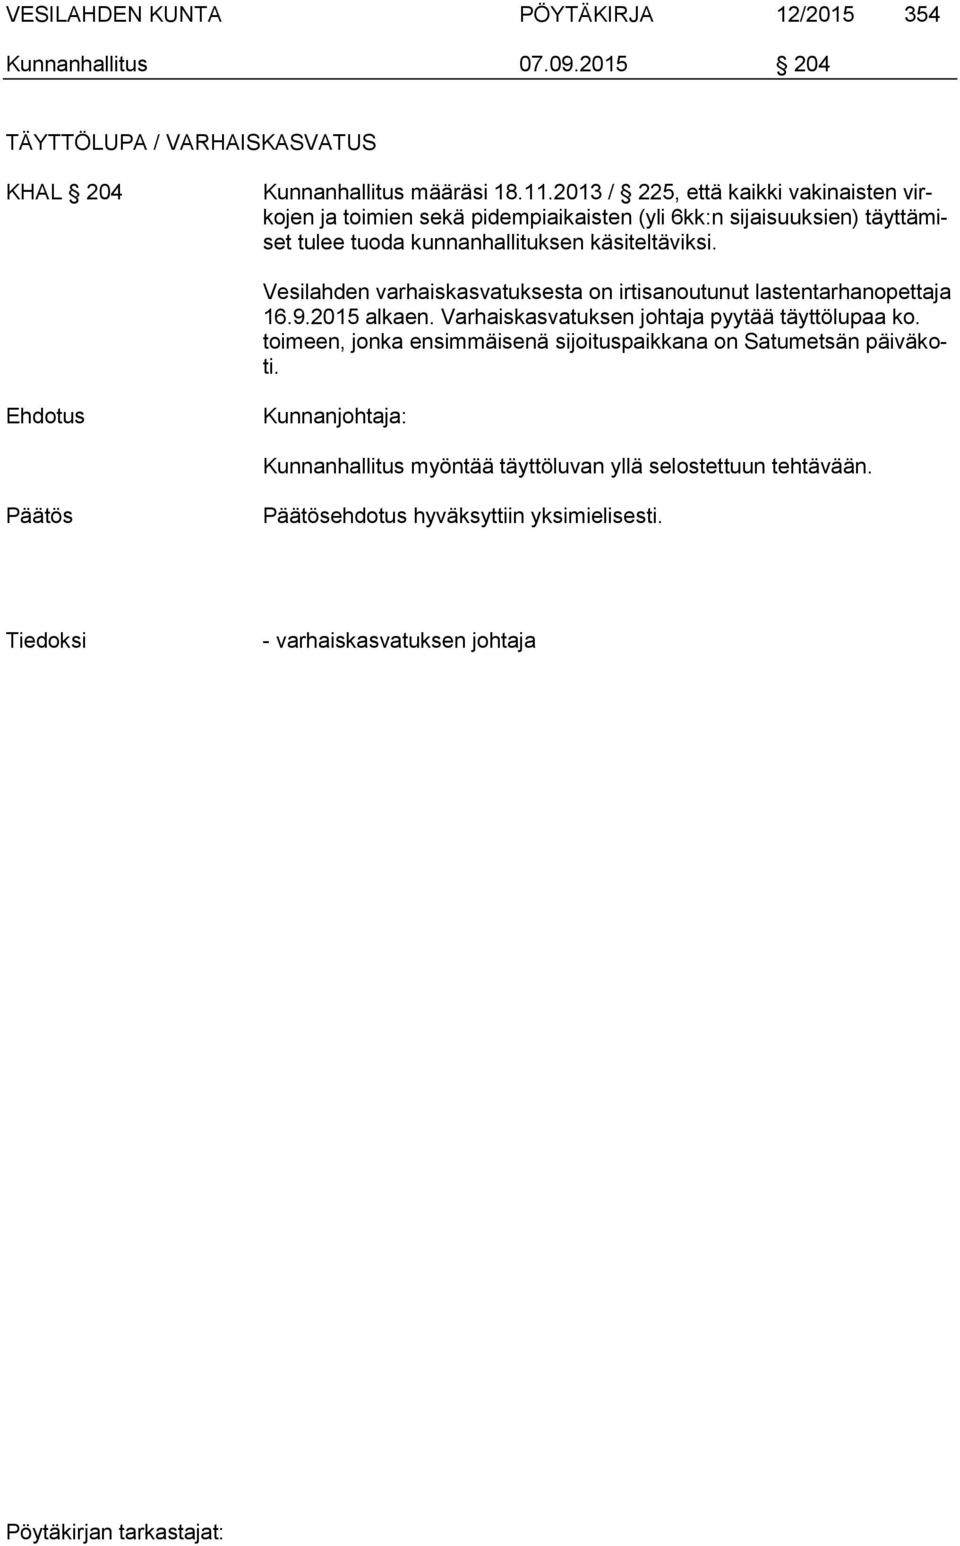 Vesilahden varhaiskasvatuksesta on irtisanoutunut lastentarhanopettaja 16.9.2015 alkaen. Varhaiskasvatuksen johtaja pyytää täyttölupaa ko.